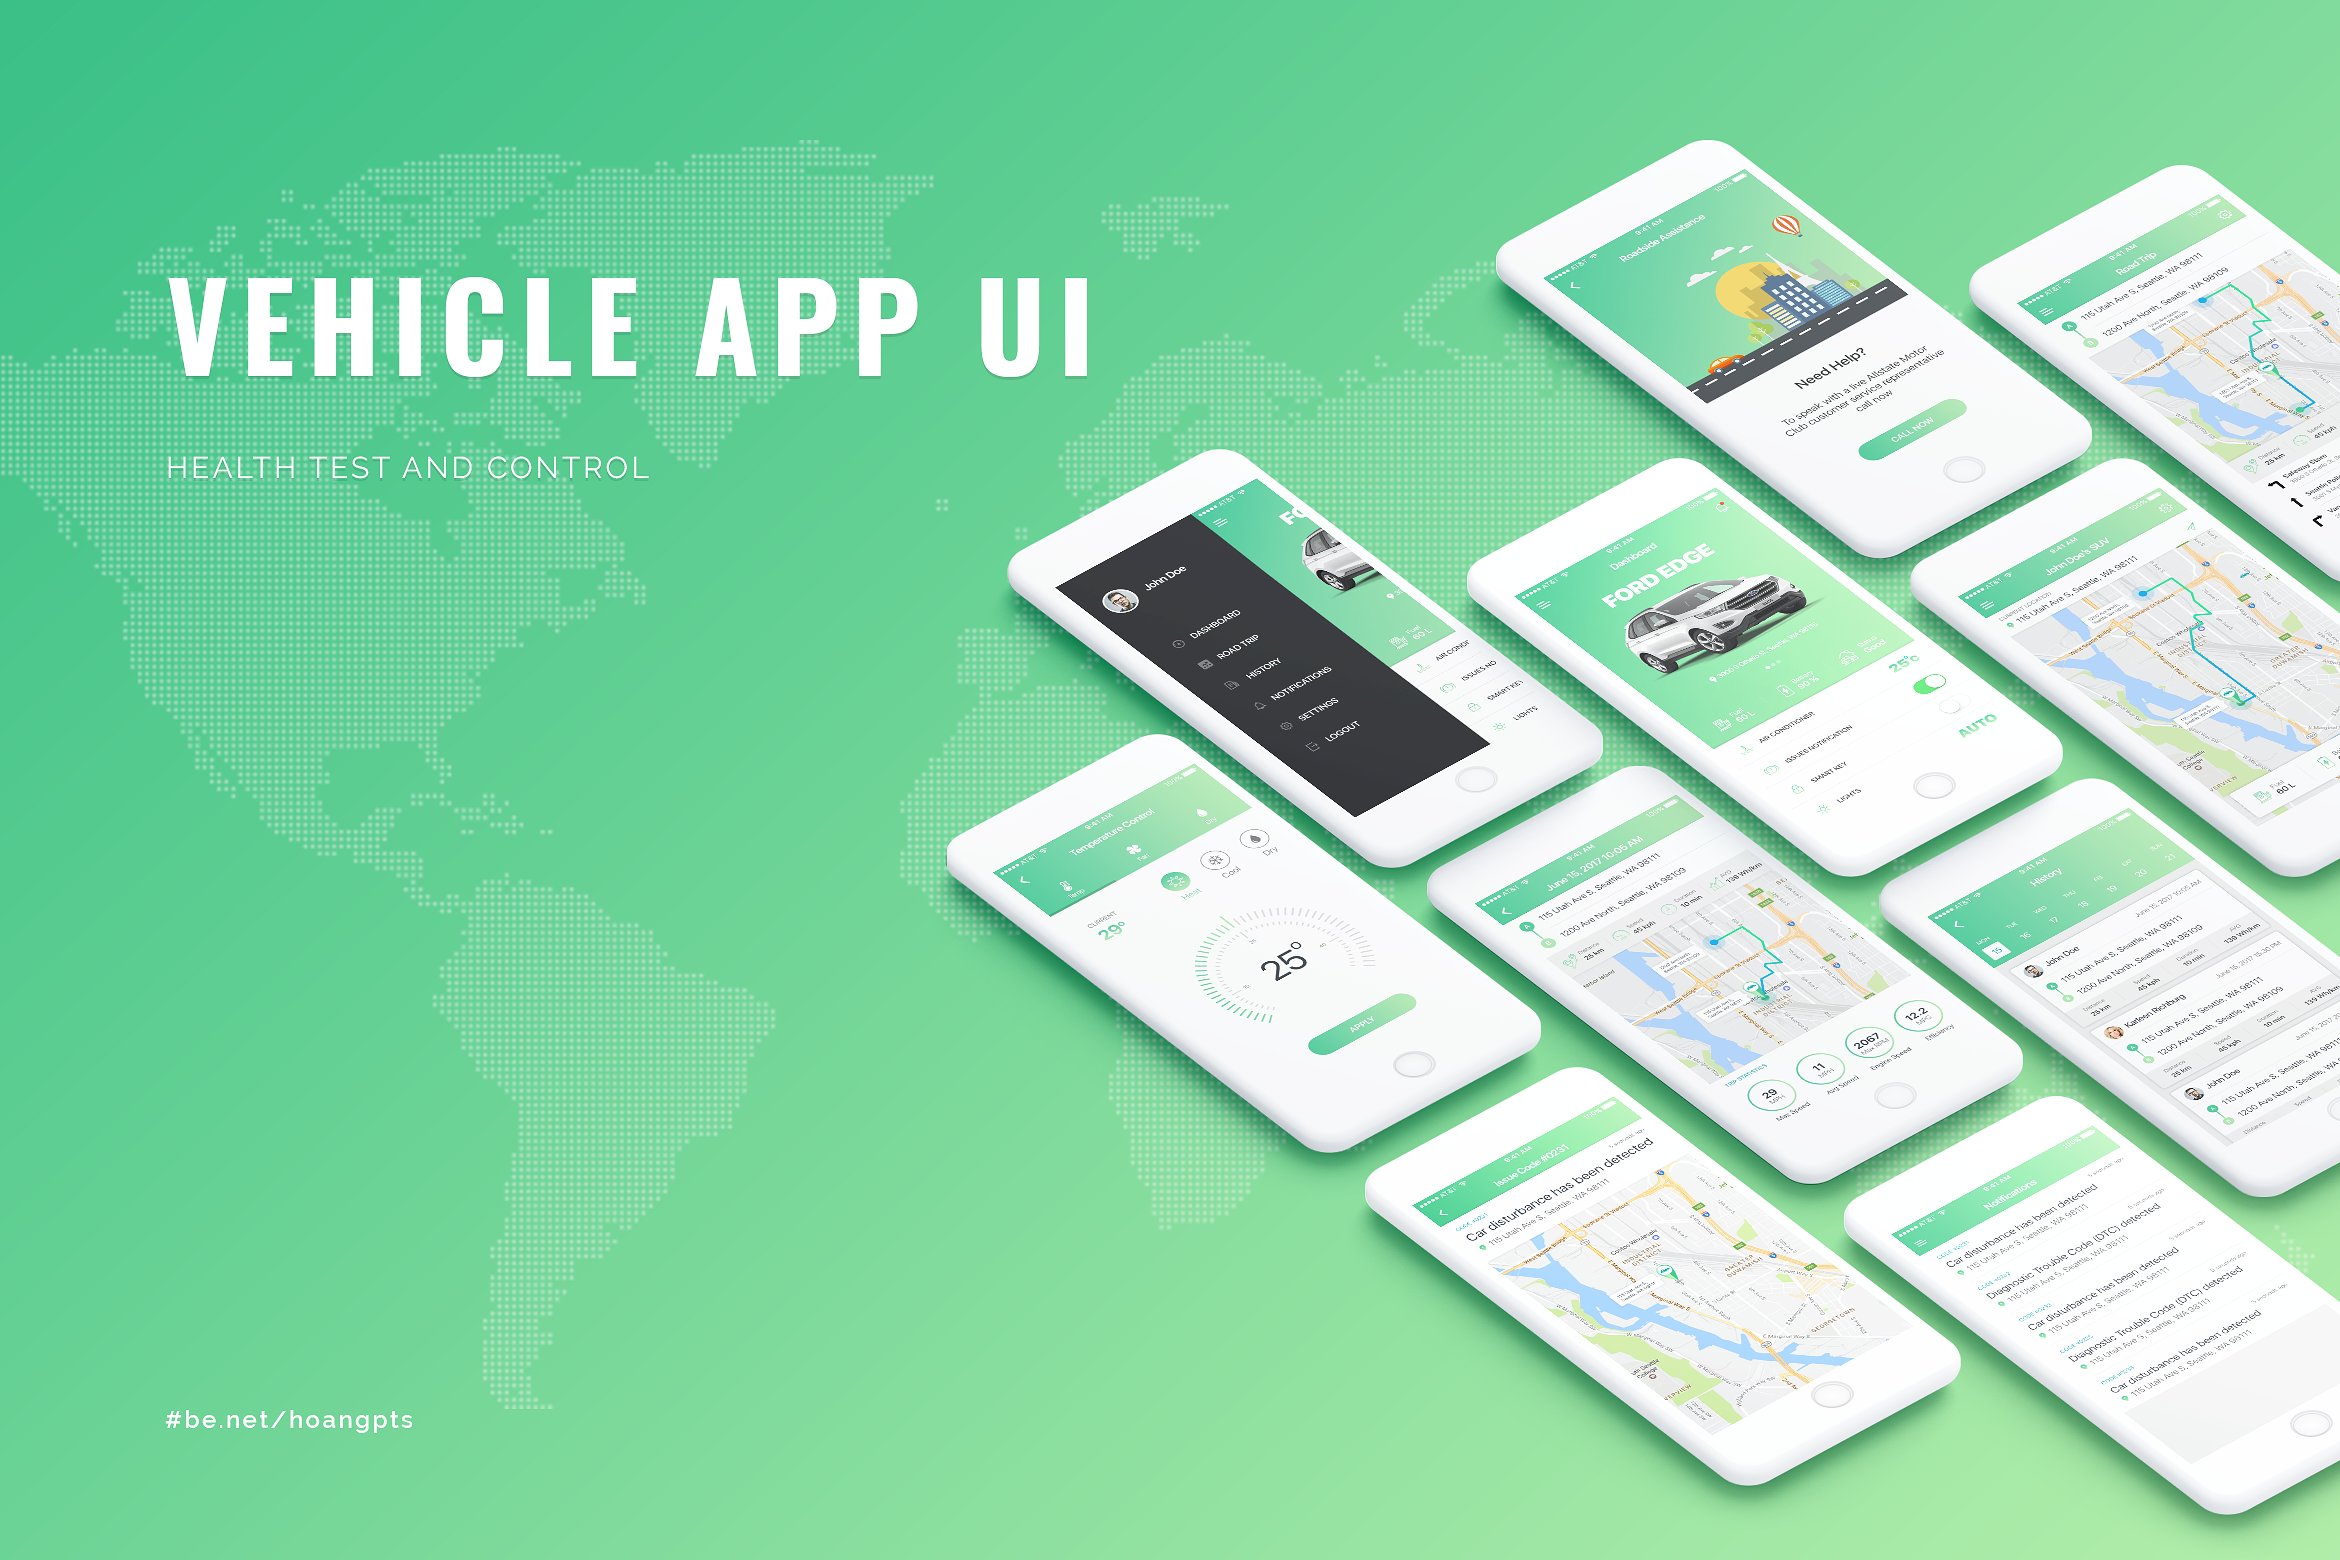 车辆跟踪和状况管理软件 UI 套件 Vehicle App UI concept插图